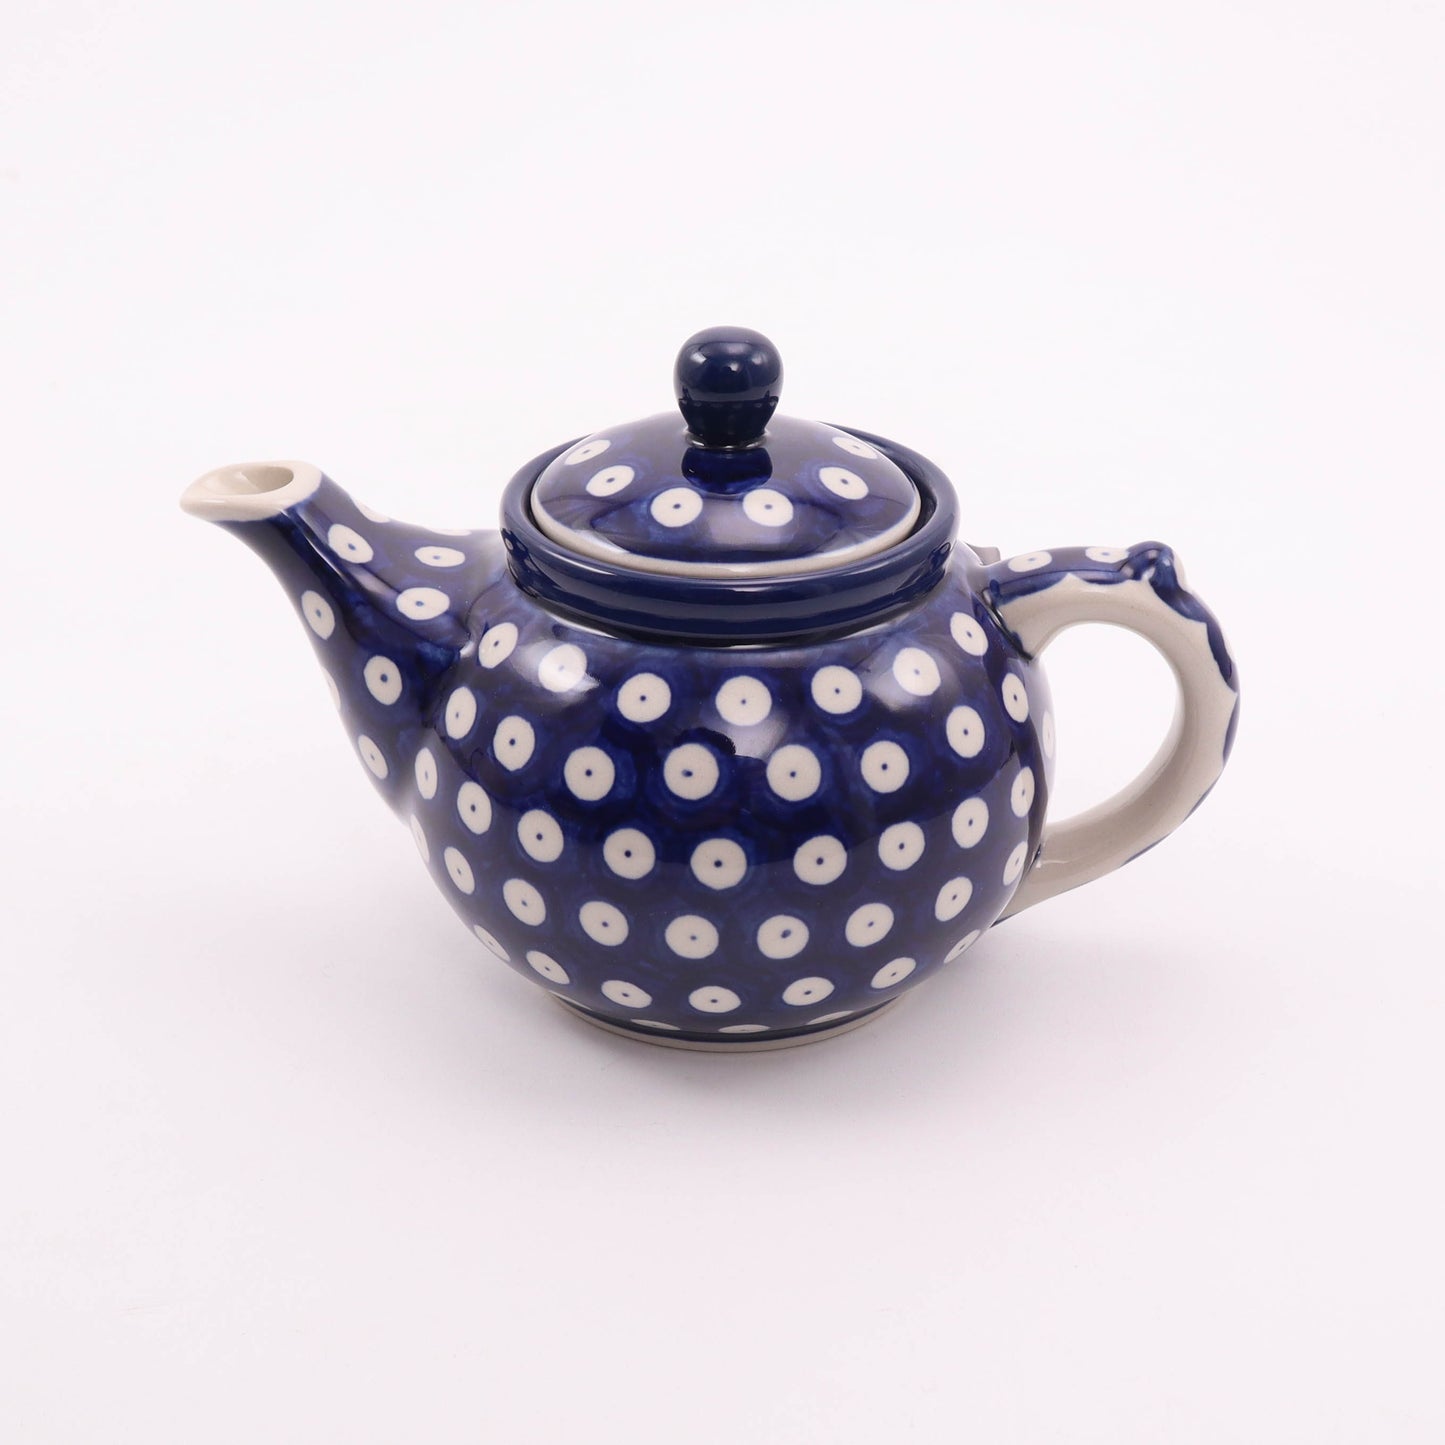 14oz Teapot. Pattern: Owl Eye